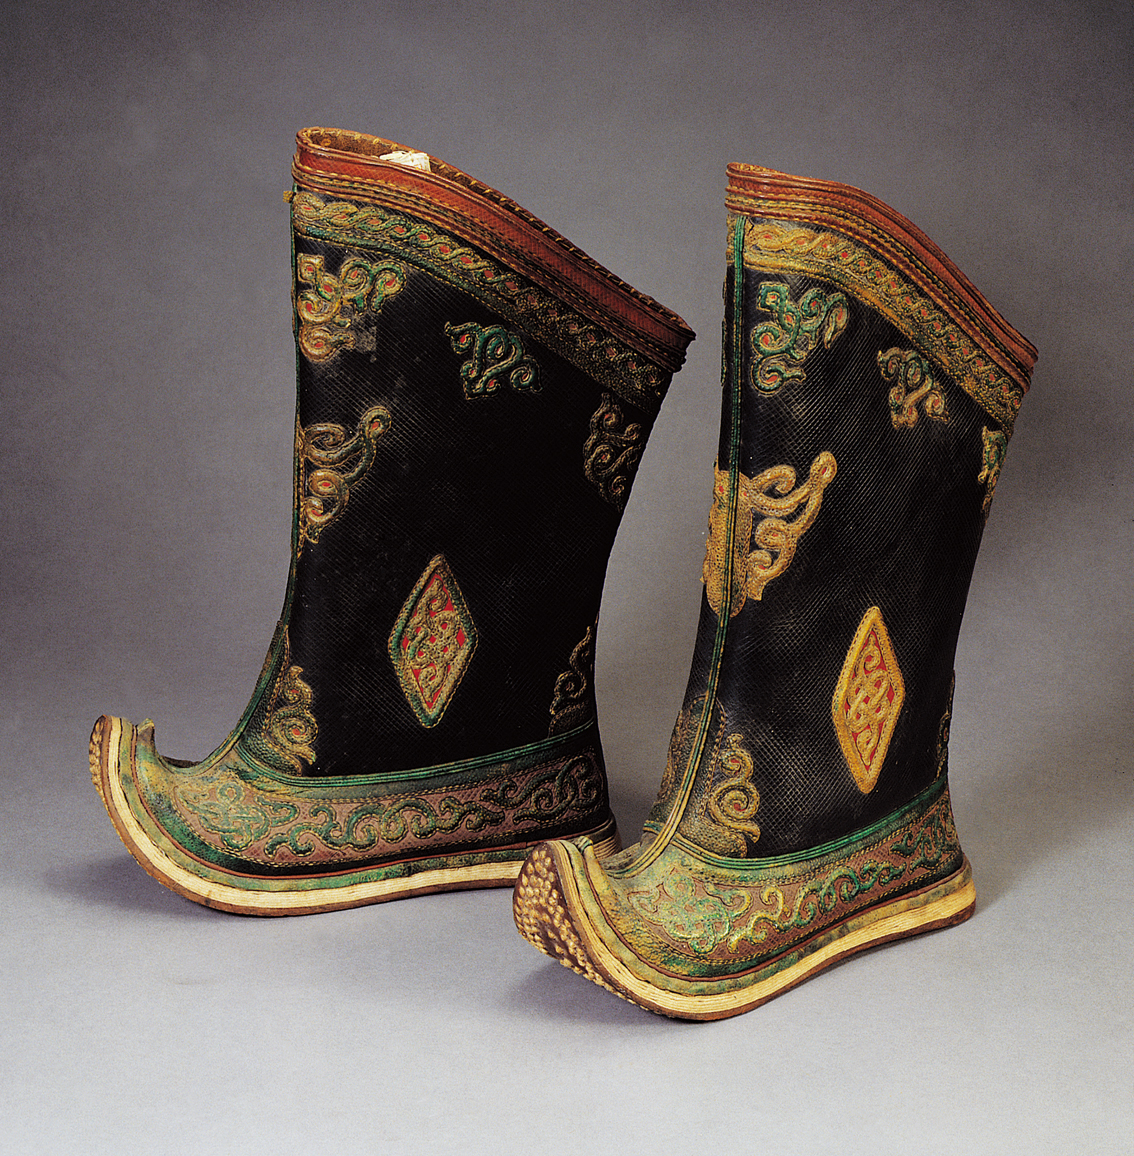 蒙古人爱穿靴子,蒙古靴分布靴和皮靴两种.